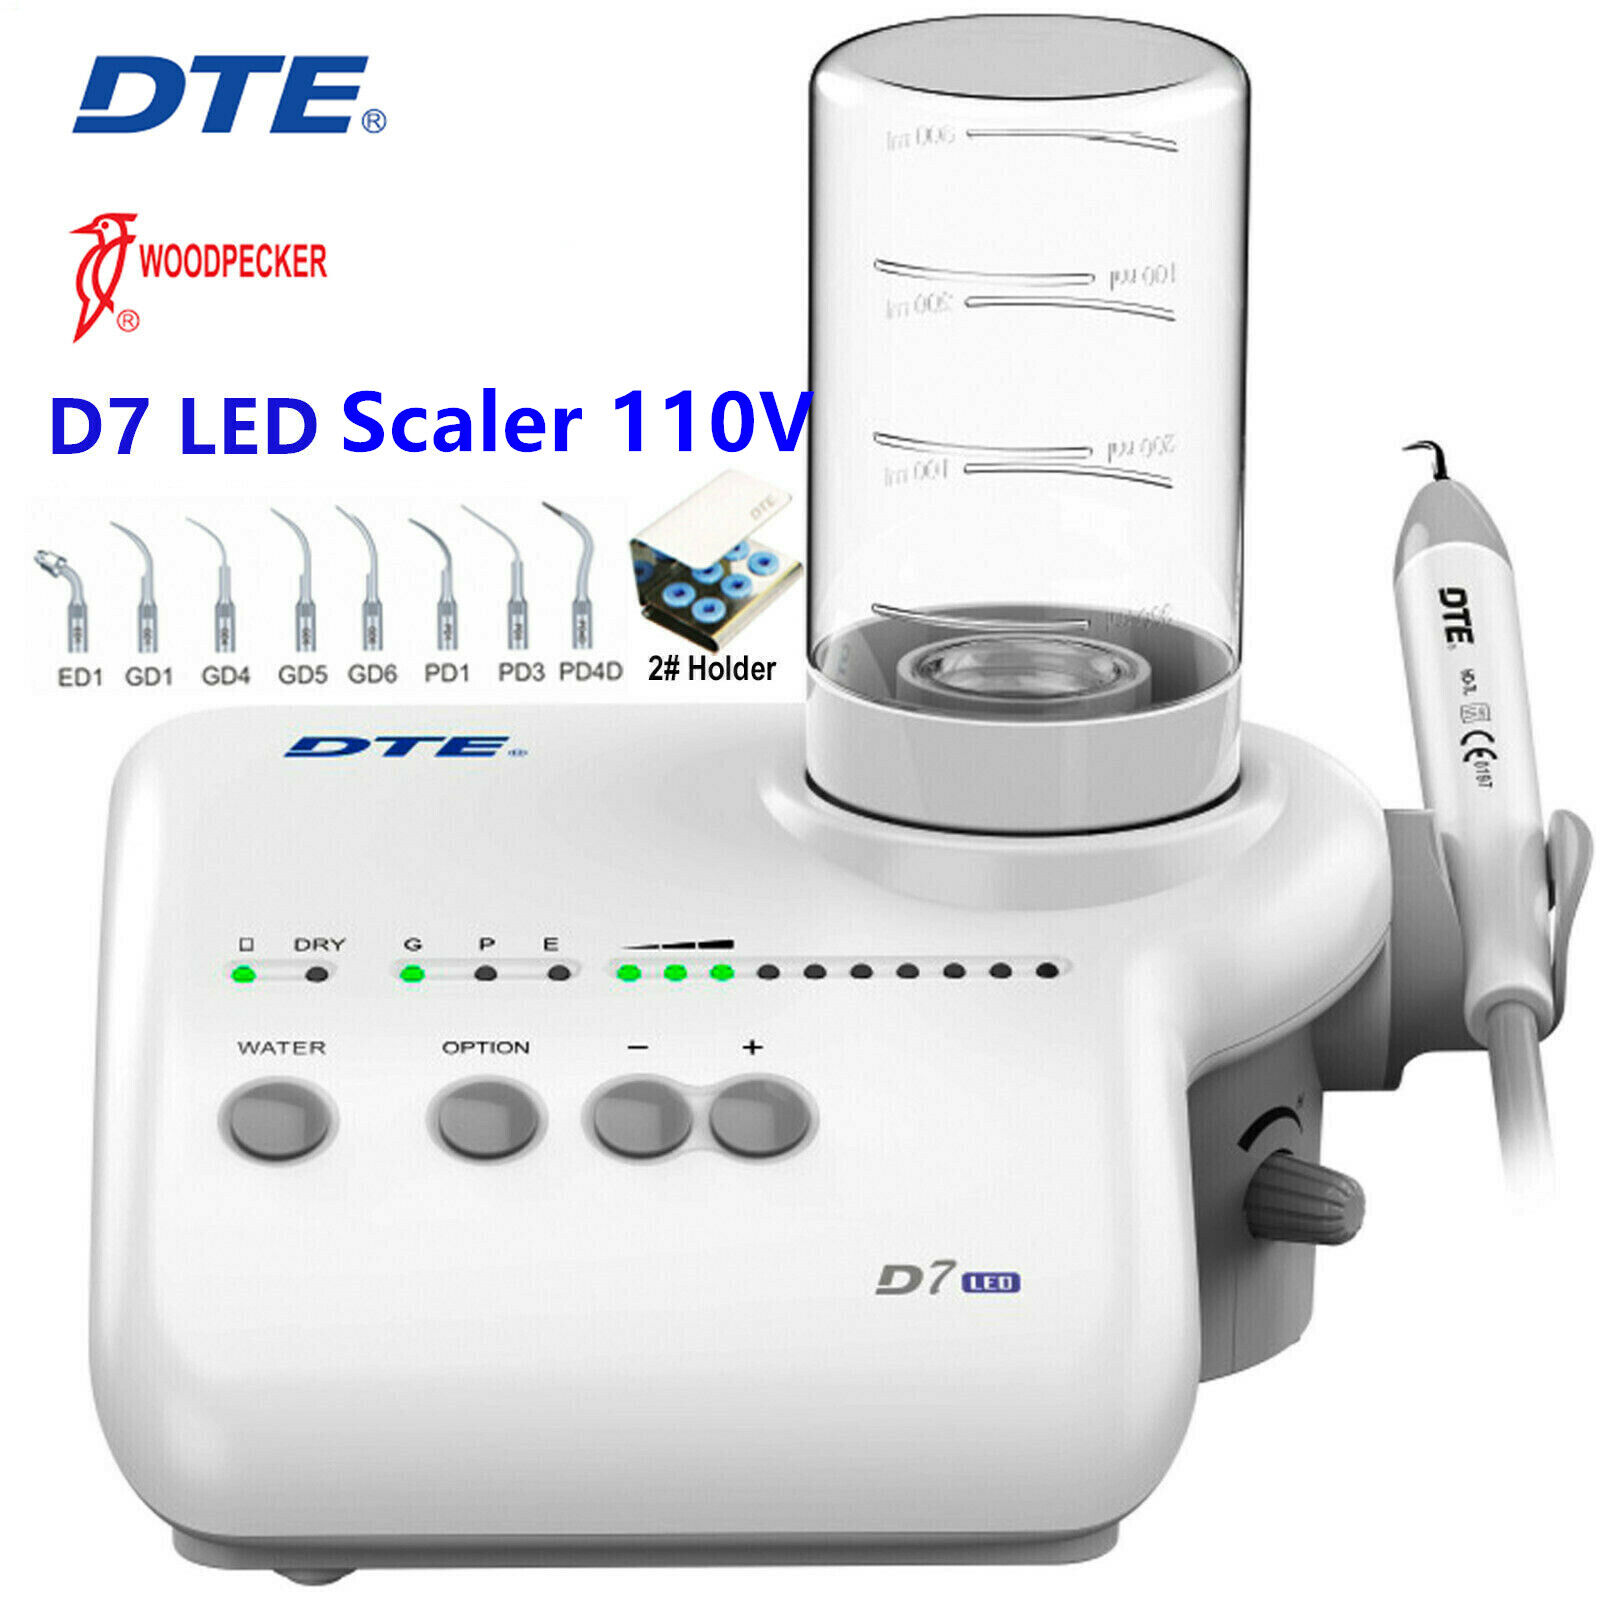 Woodpecker DTE D7 LED Dental Ultrasonic Scaler Handpiece 110V